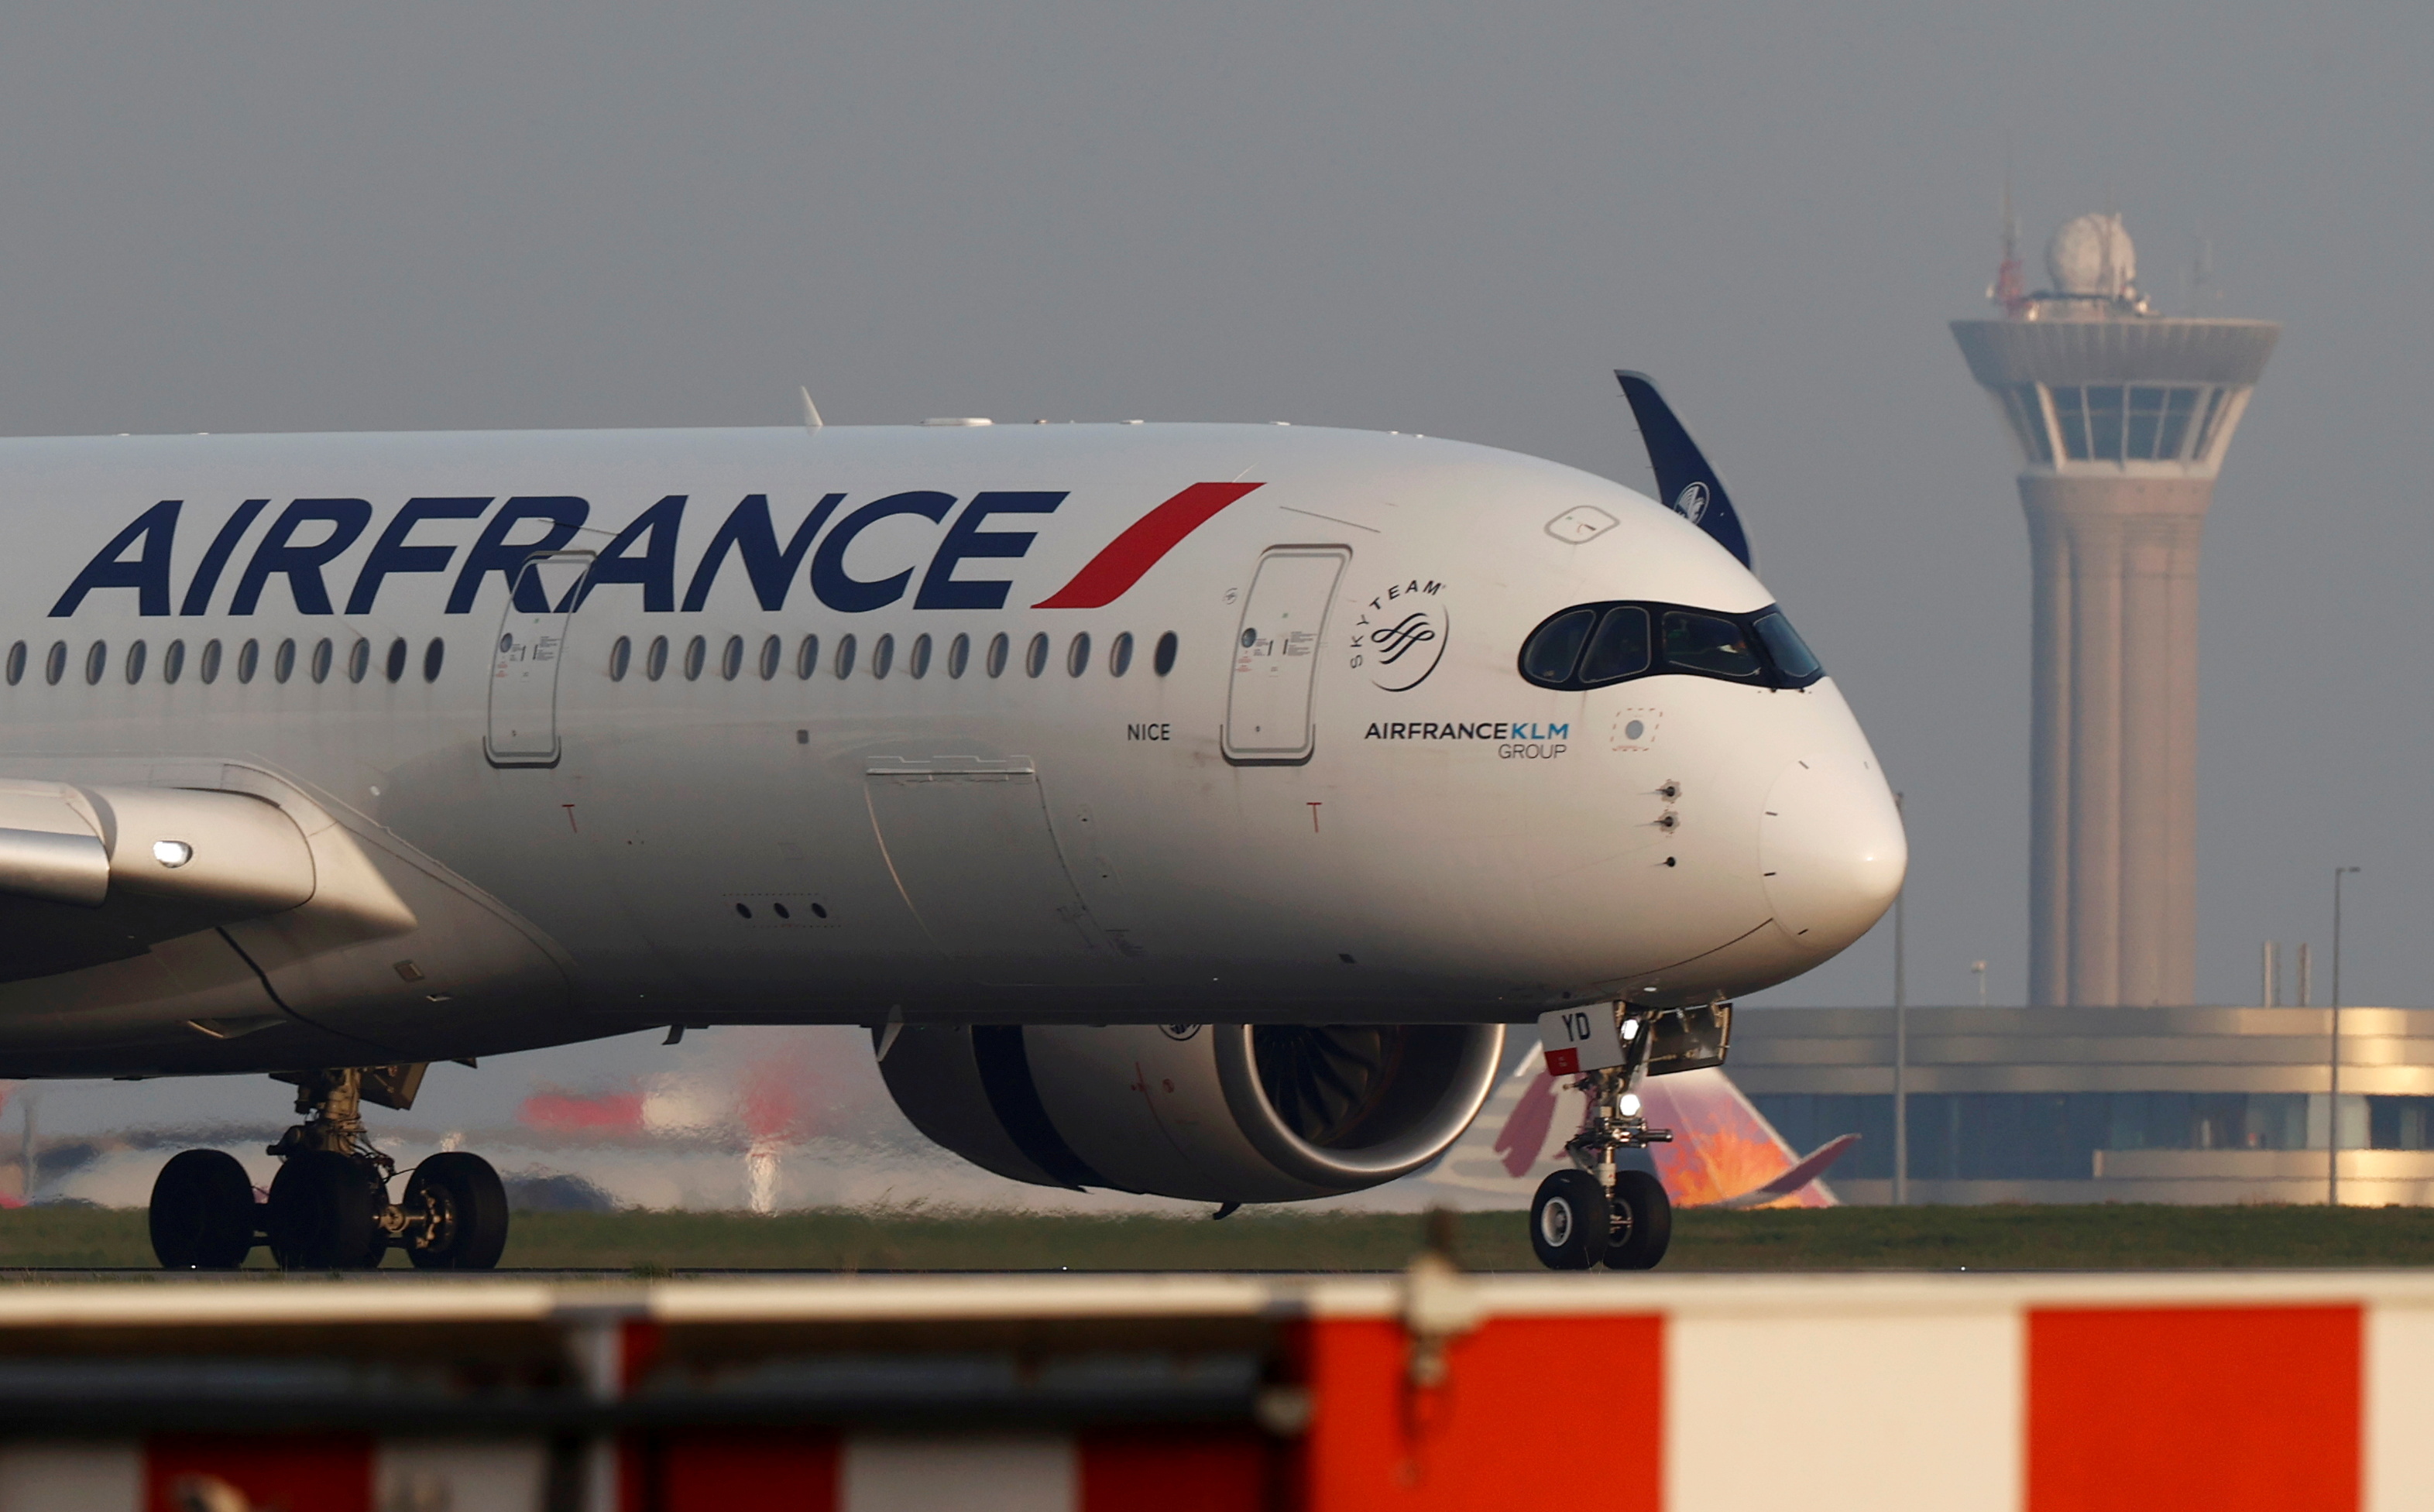 Supprimer les vols intérieurs en France... augmente les émissions de CO2 de l'aérien